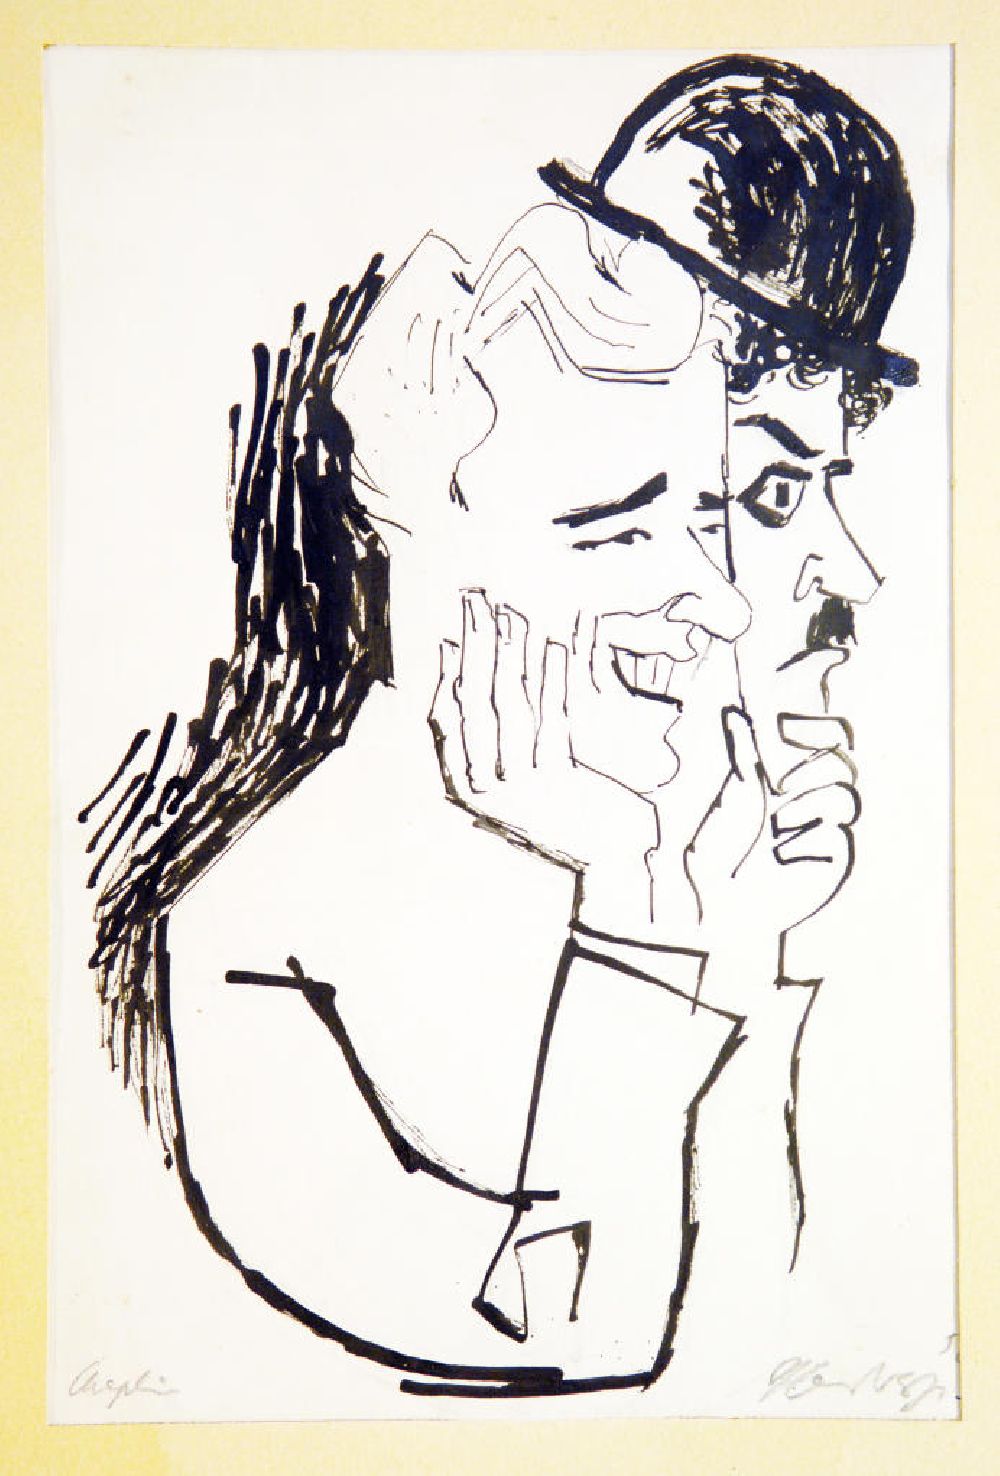 DDR-Fotoarchiv: Berlin - Zeichnung von Herbert Sandberg Chaplin aus dem Jahr 1956